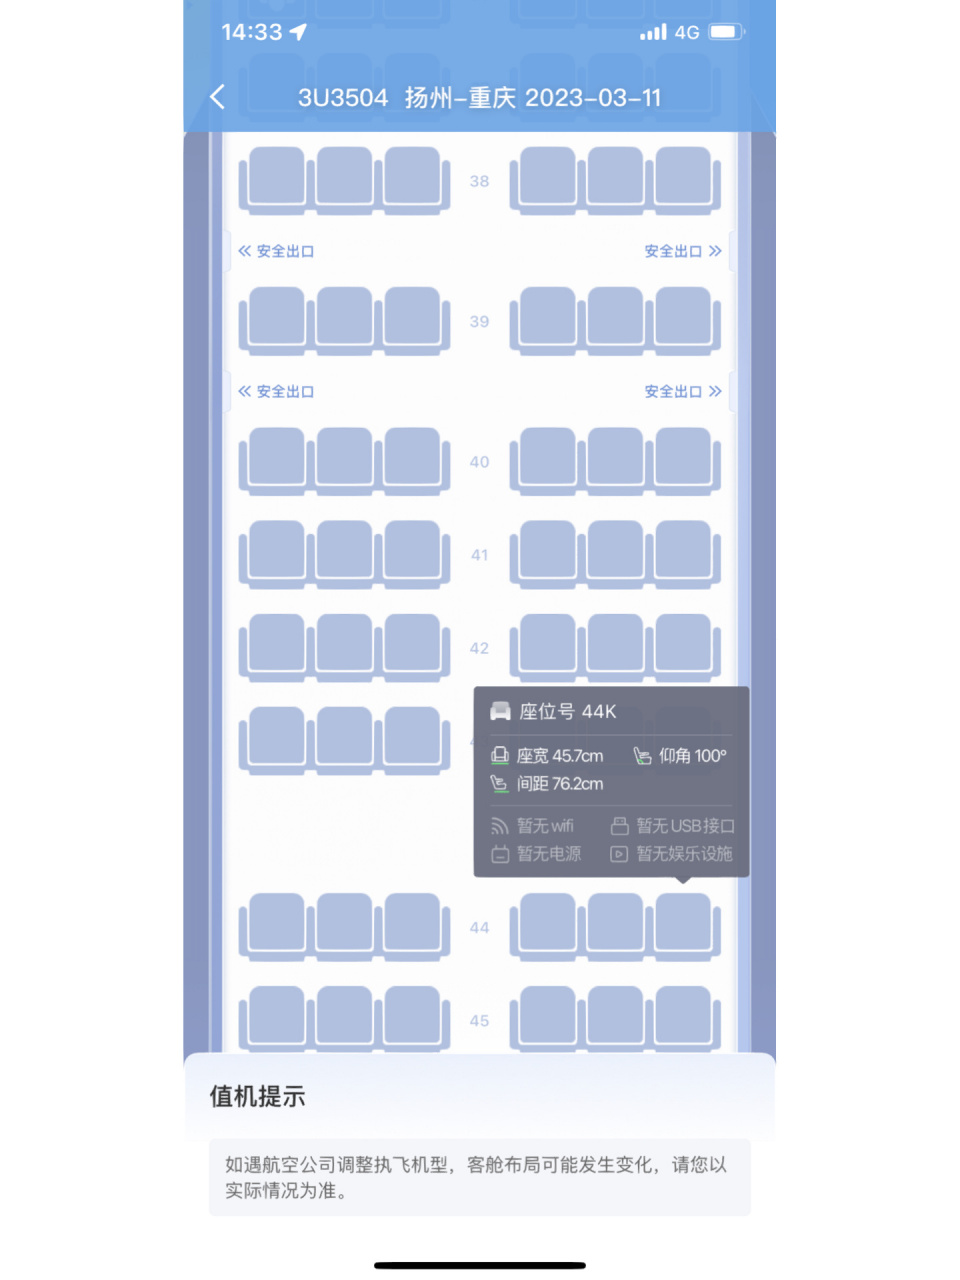 川航空客320选座 第一次坐飞机j姐妹们帮忙选选坐哪里比较合适想拍